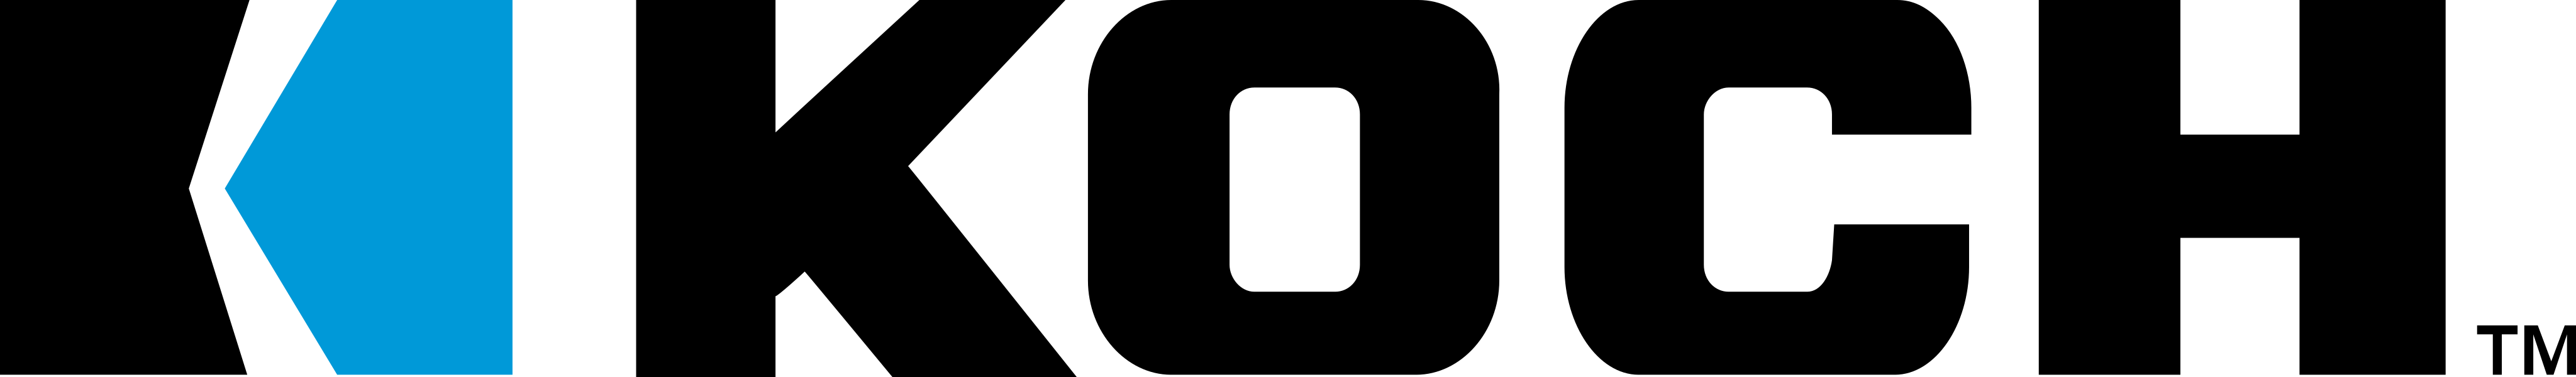 Koch Industries Logo.